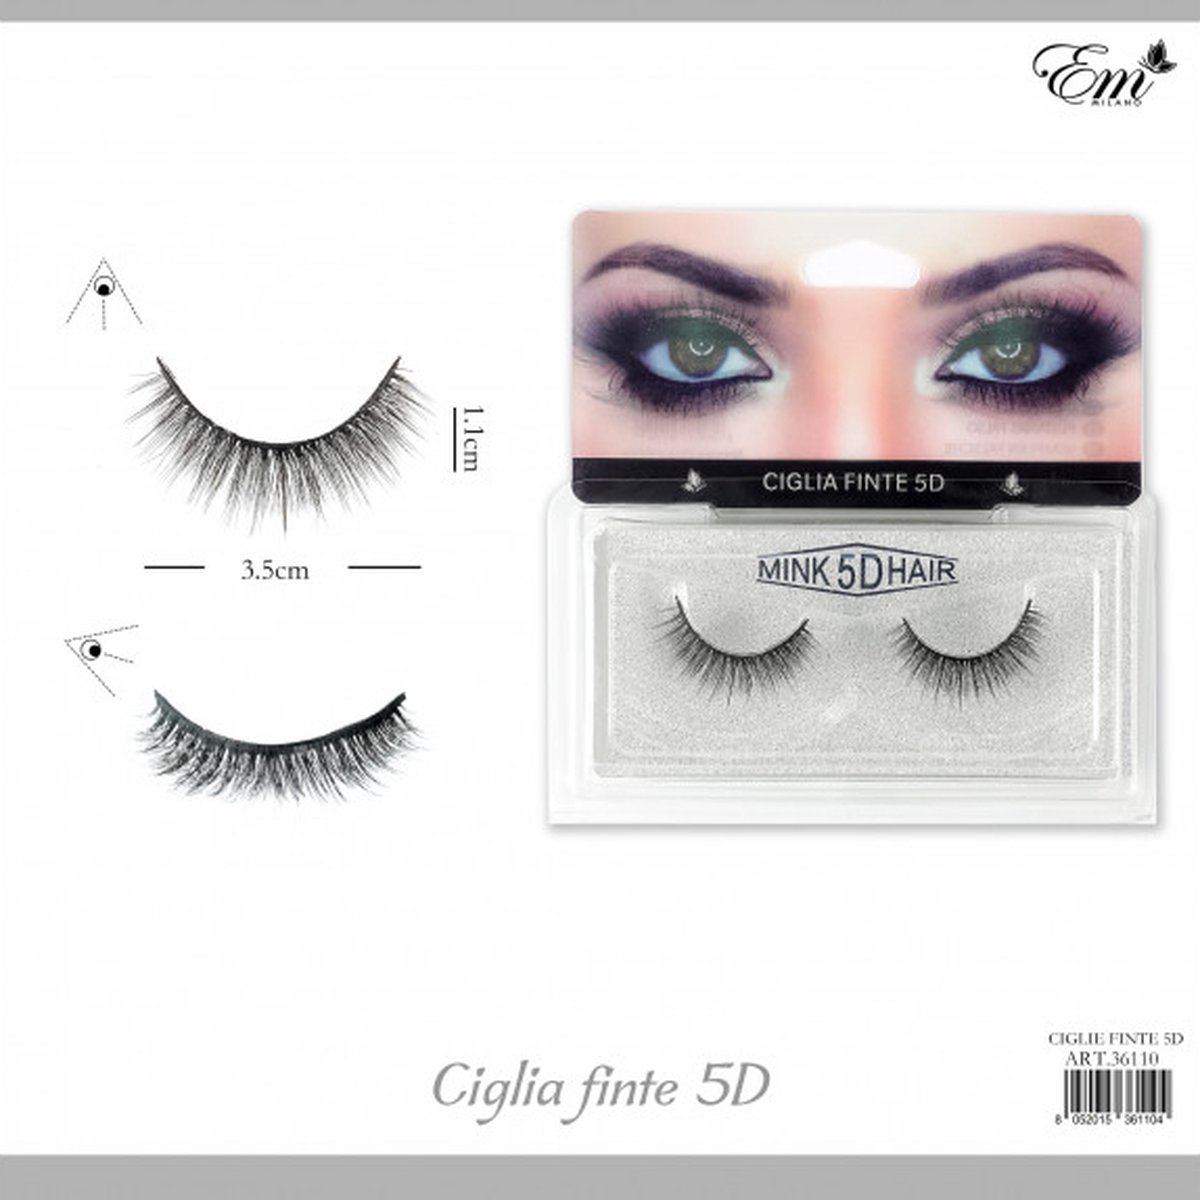 Fake Eyelashes - Nep Wimpers - Zwart - Mink 5D Hair - EM Milano -